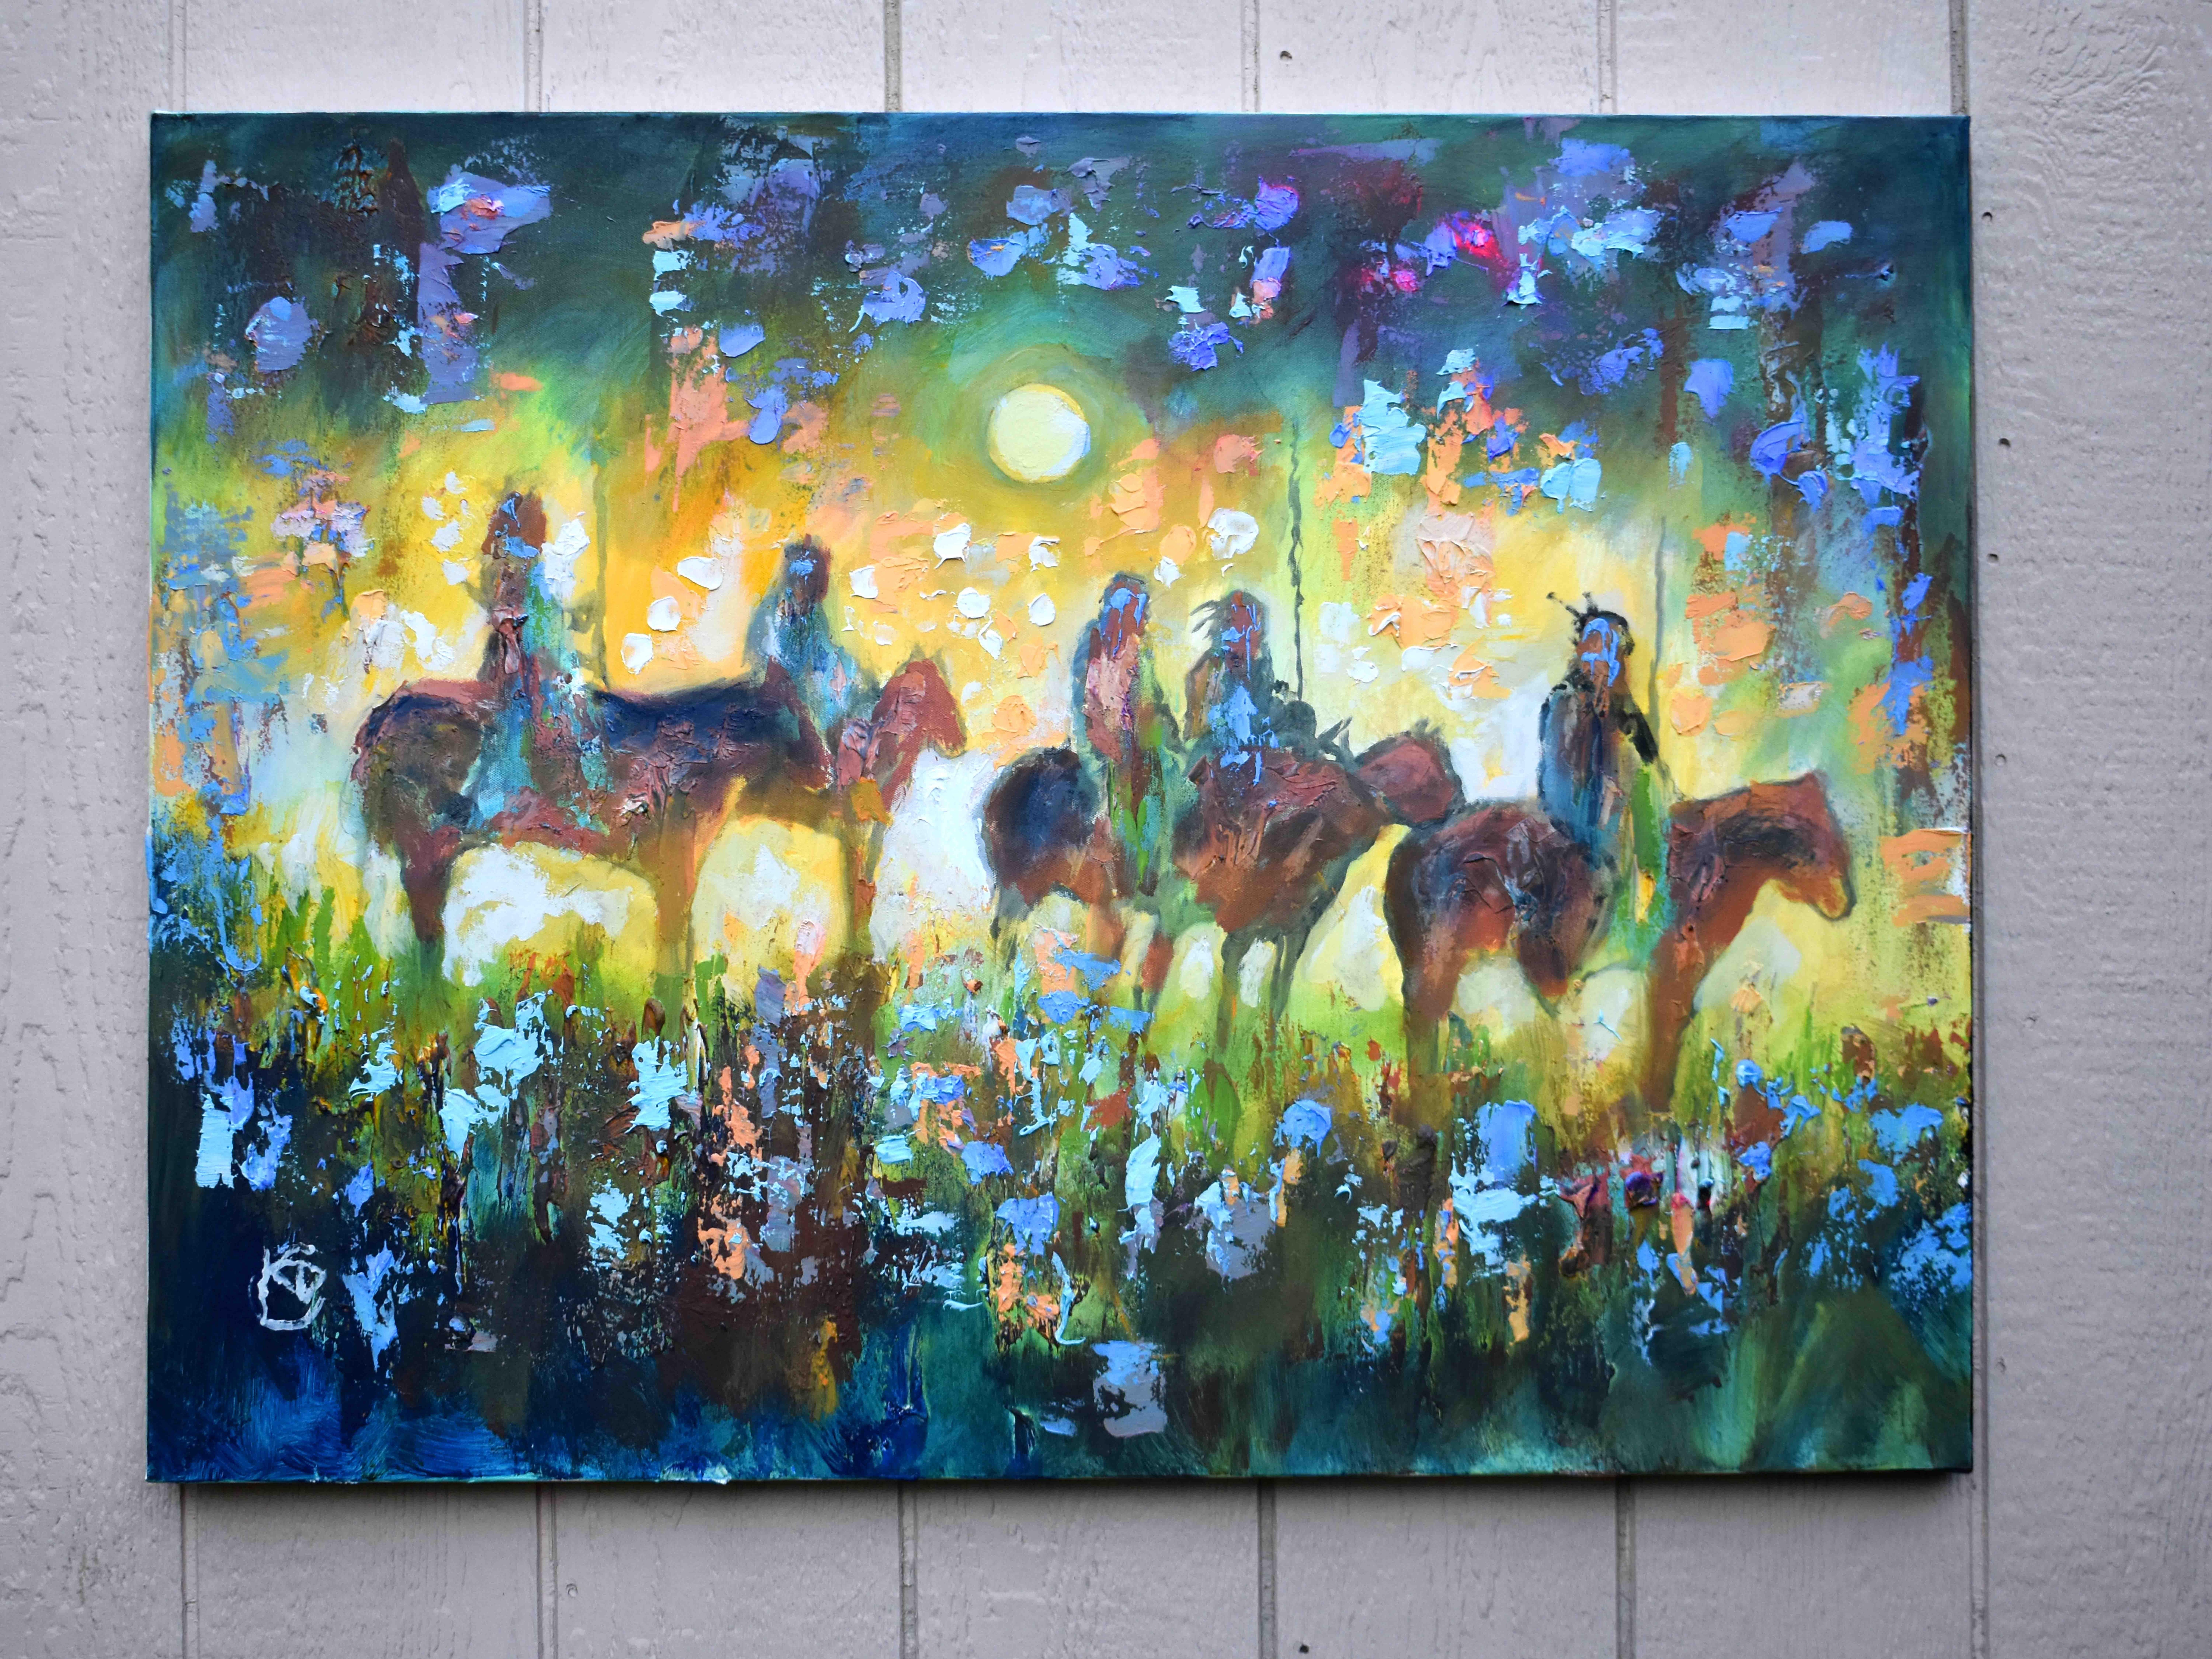 <p>Kommentare des Künstlers<br>Der Künstler Kip Decker präsentiert ein lebhaftes Porträt von fünf amerikanischen Ureinwohnern zu Pferd. Sie schauen gemeinsam nach draußen und halten Ausschau nach dem Unvorhergesehenen, umgeben von bunten